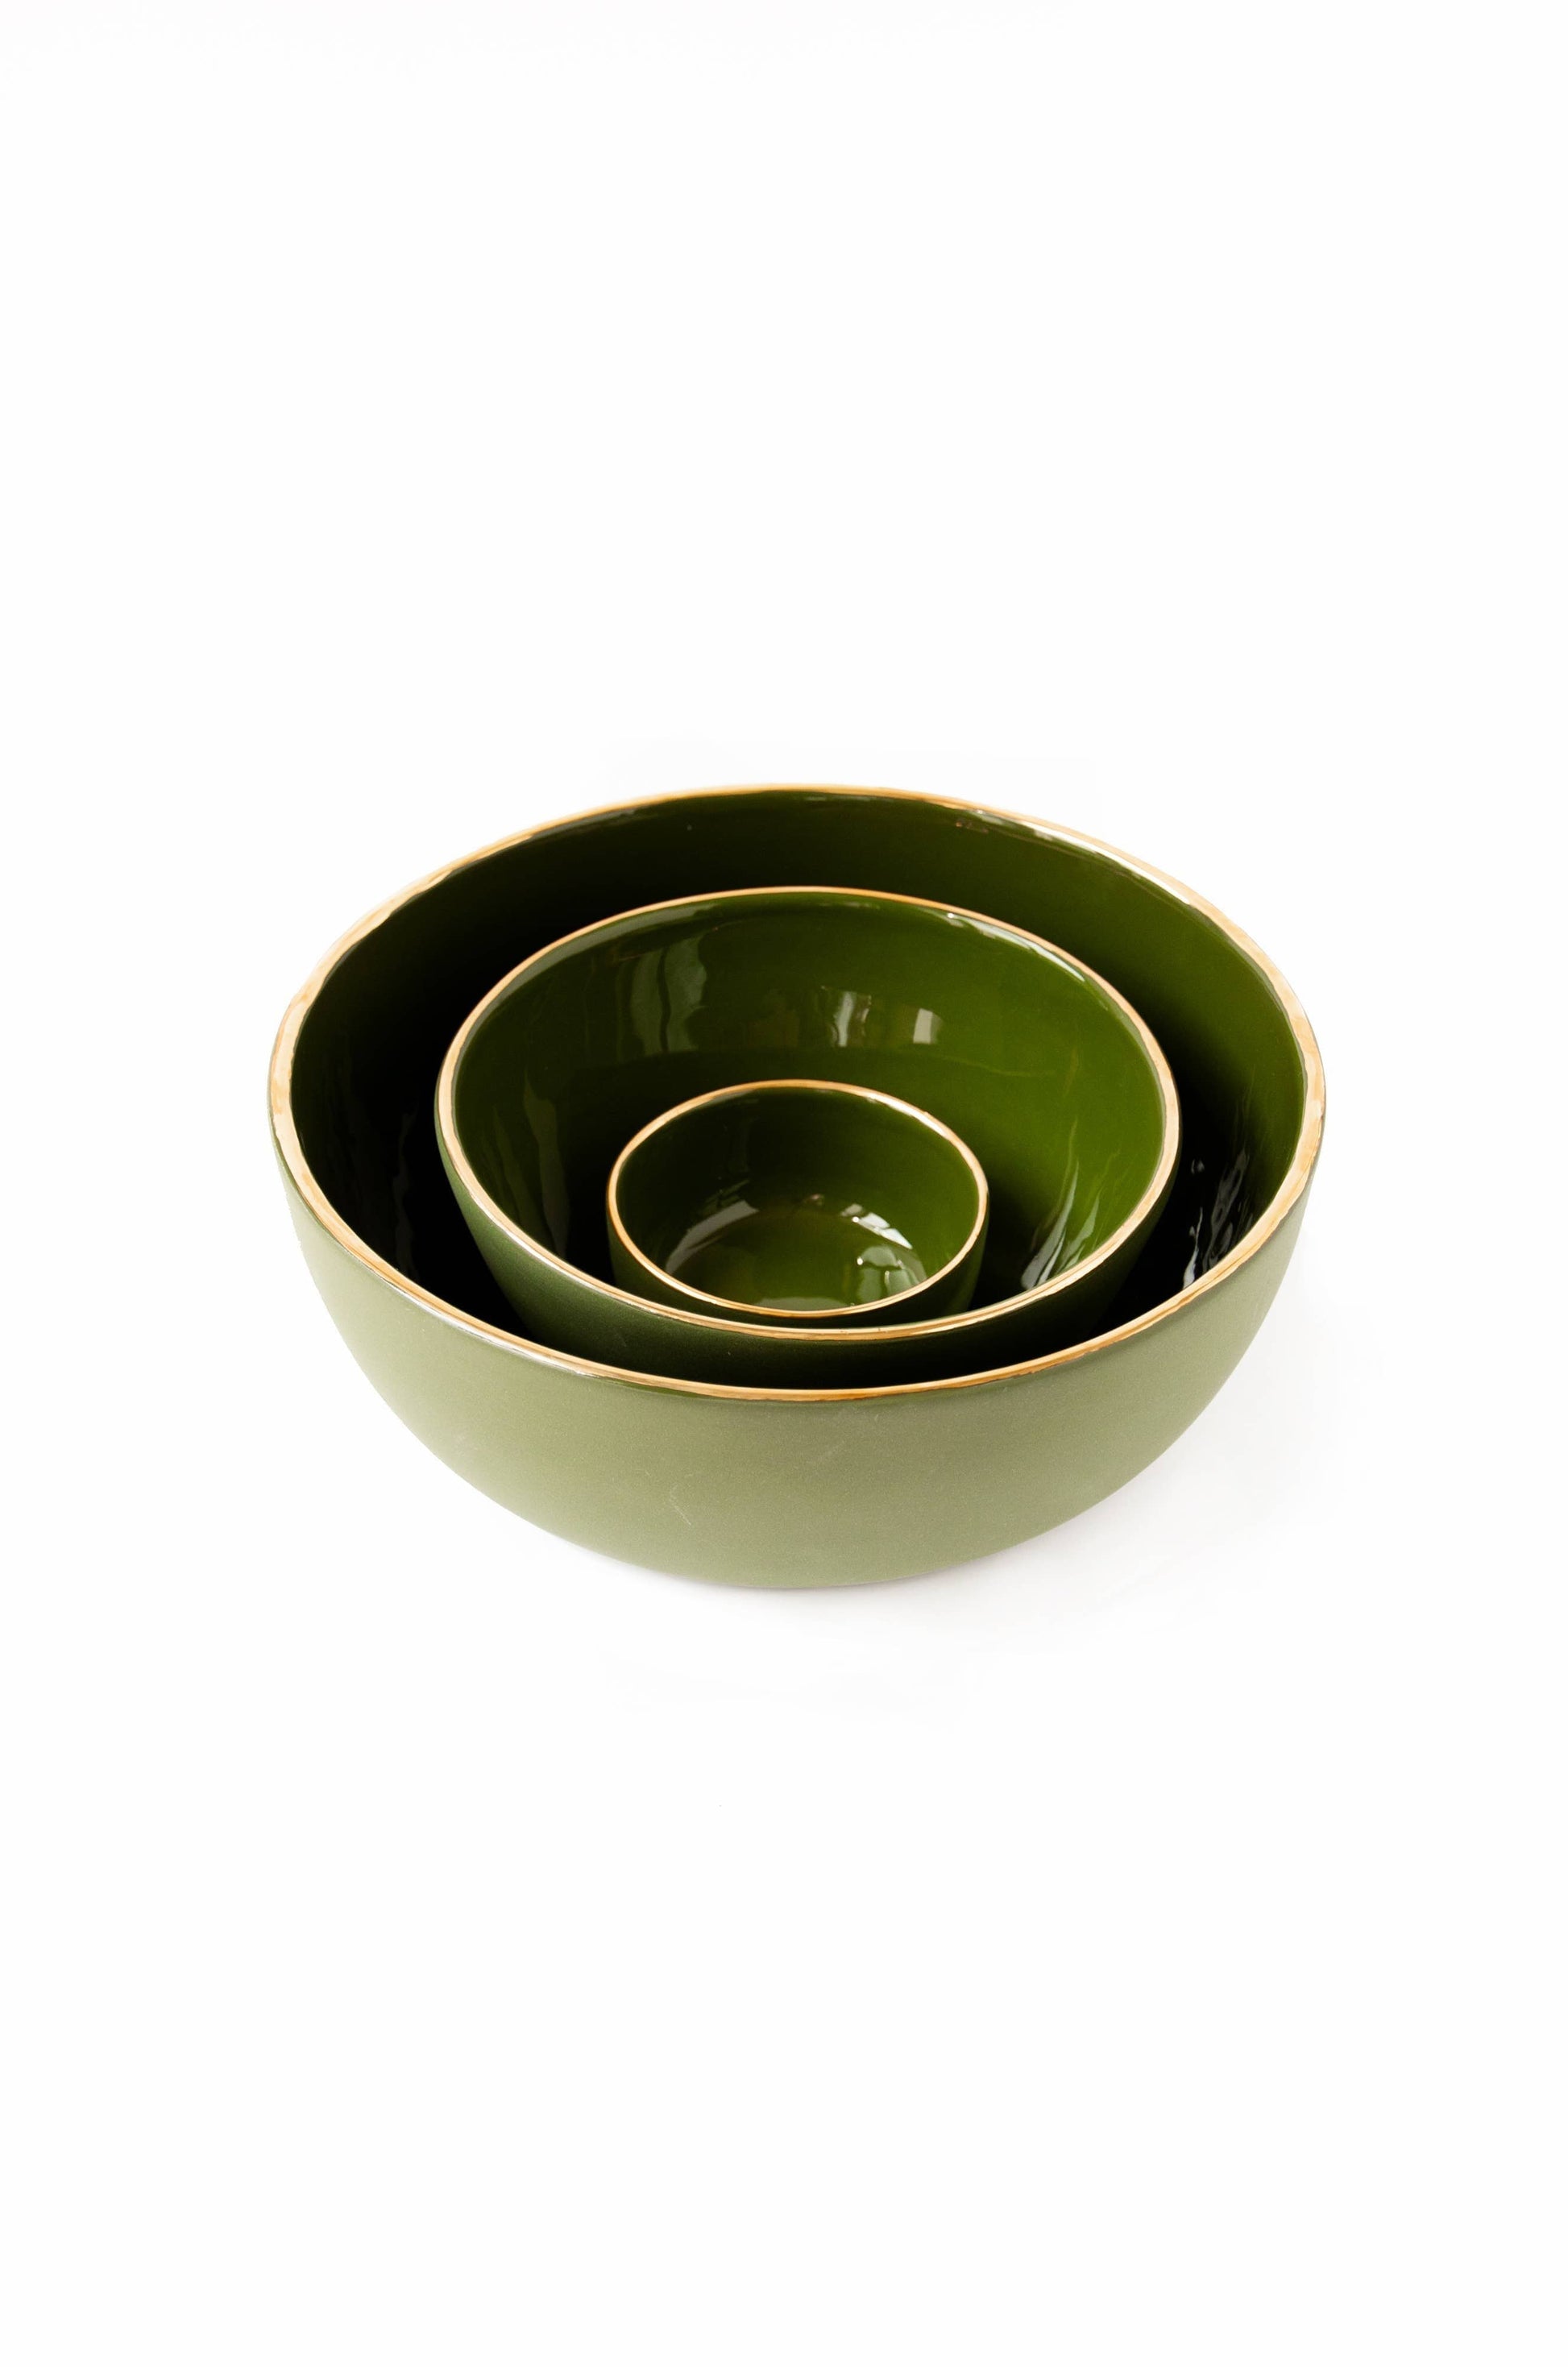 Ethical Trade Co Tabletop Green Handmade Ukrainian Porcelain Nesting Bowl Set